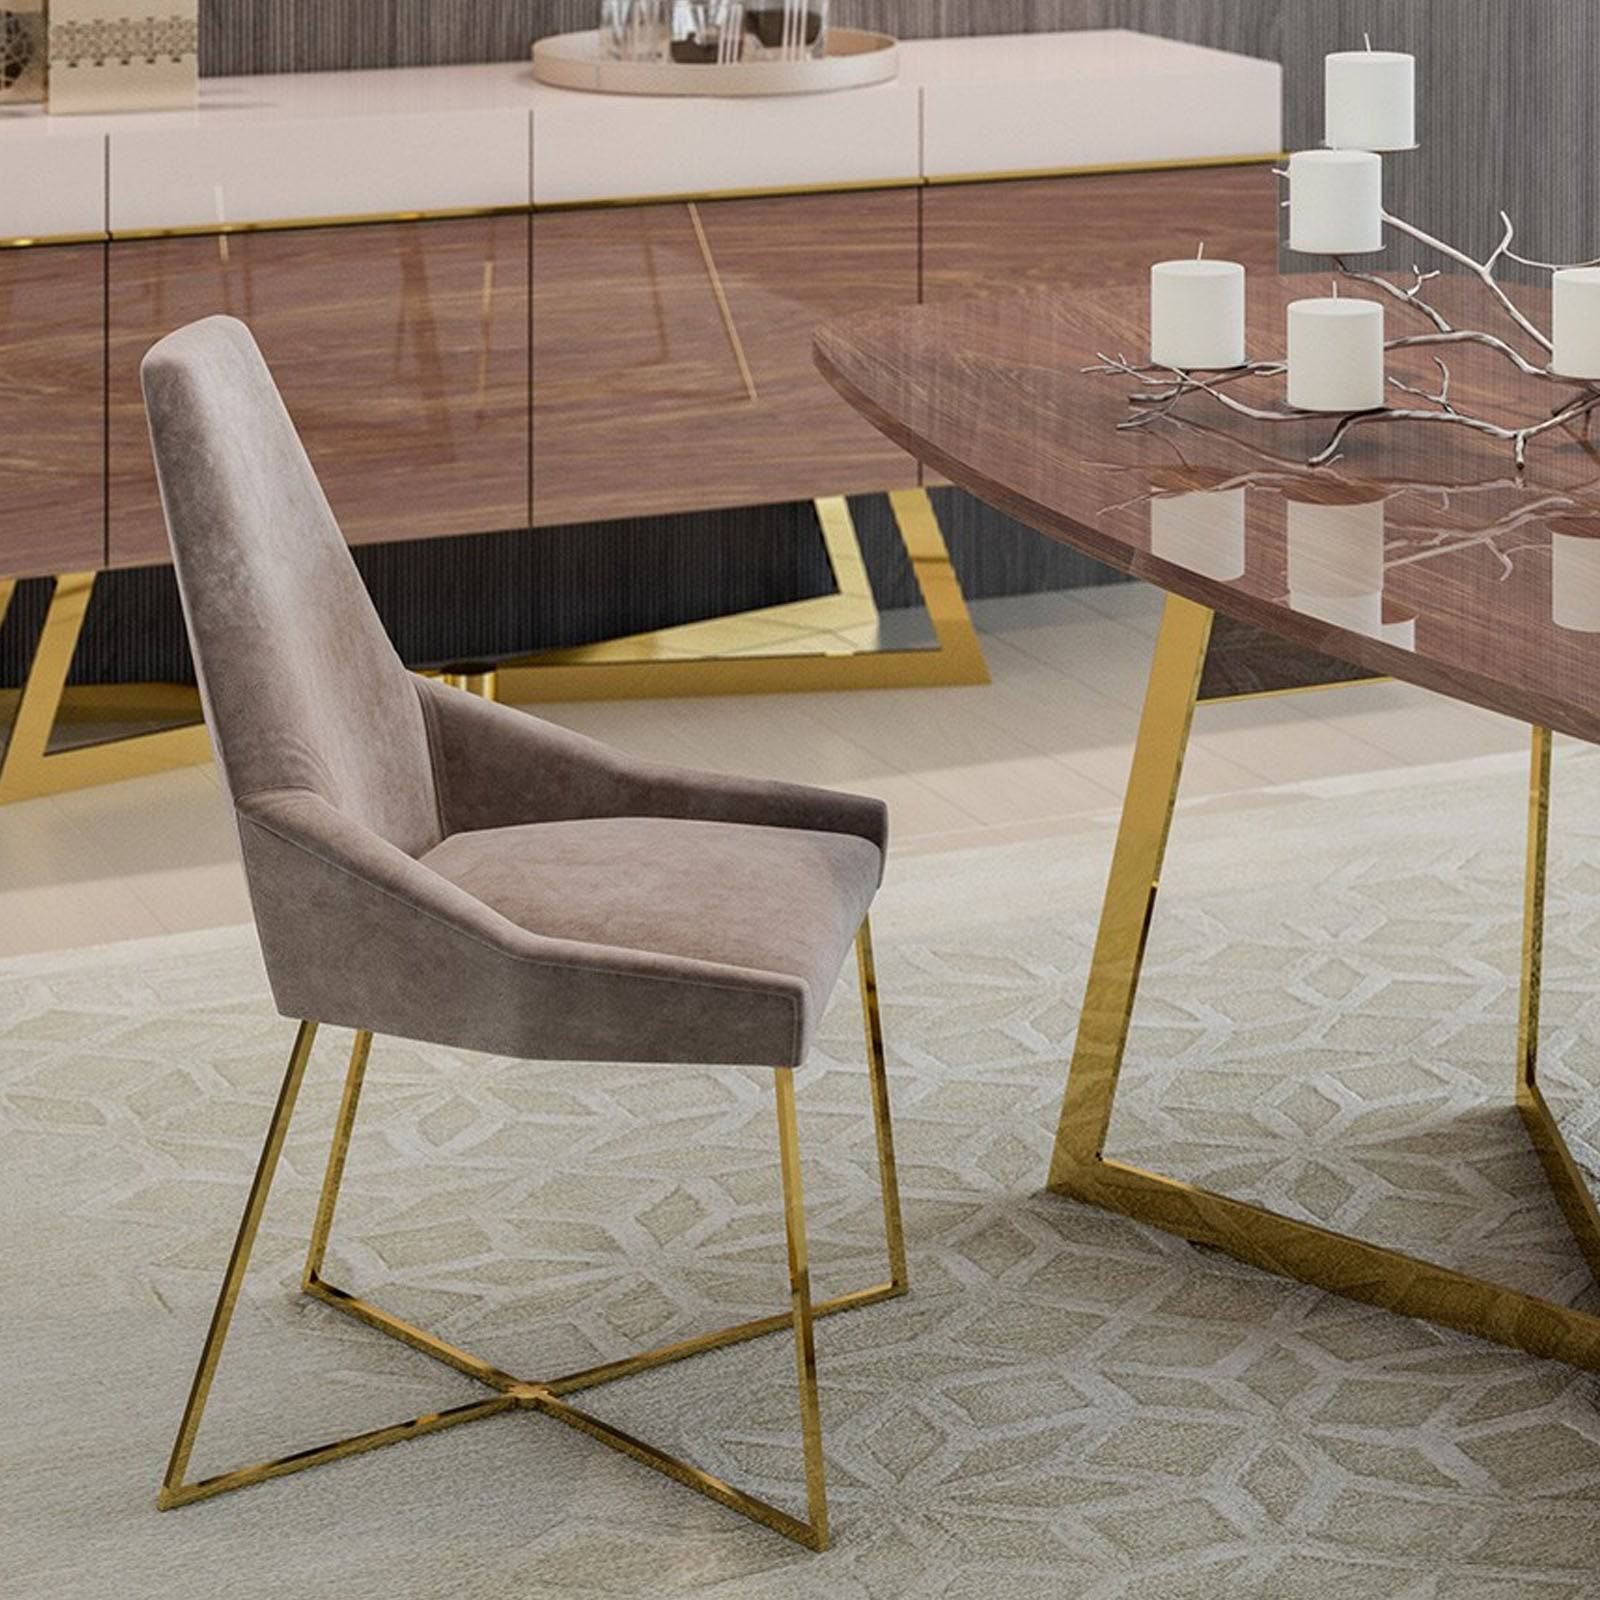 Aura Sideboard Aura-Cons -  Sideboards | طاوله جانبيه أورا - ebarza Furniture UAE | Shop Modern Furniture in Abu Dhabi & Dubai - مفروشات ايبازرا في الامارات | تسوق اثاث عصري وديكورات مميزة في دبي وابوظبي